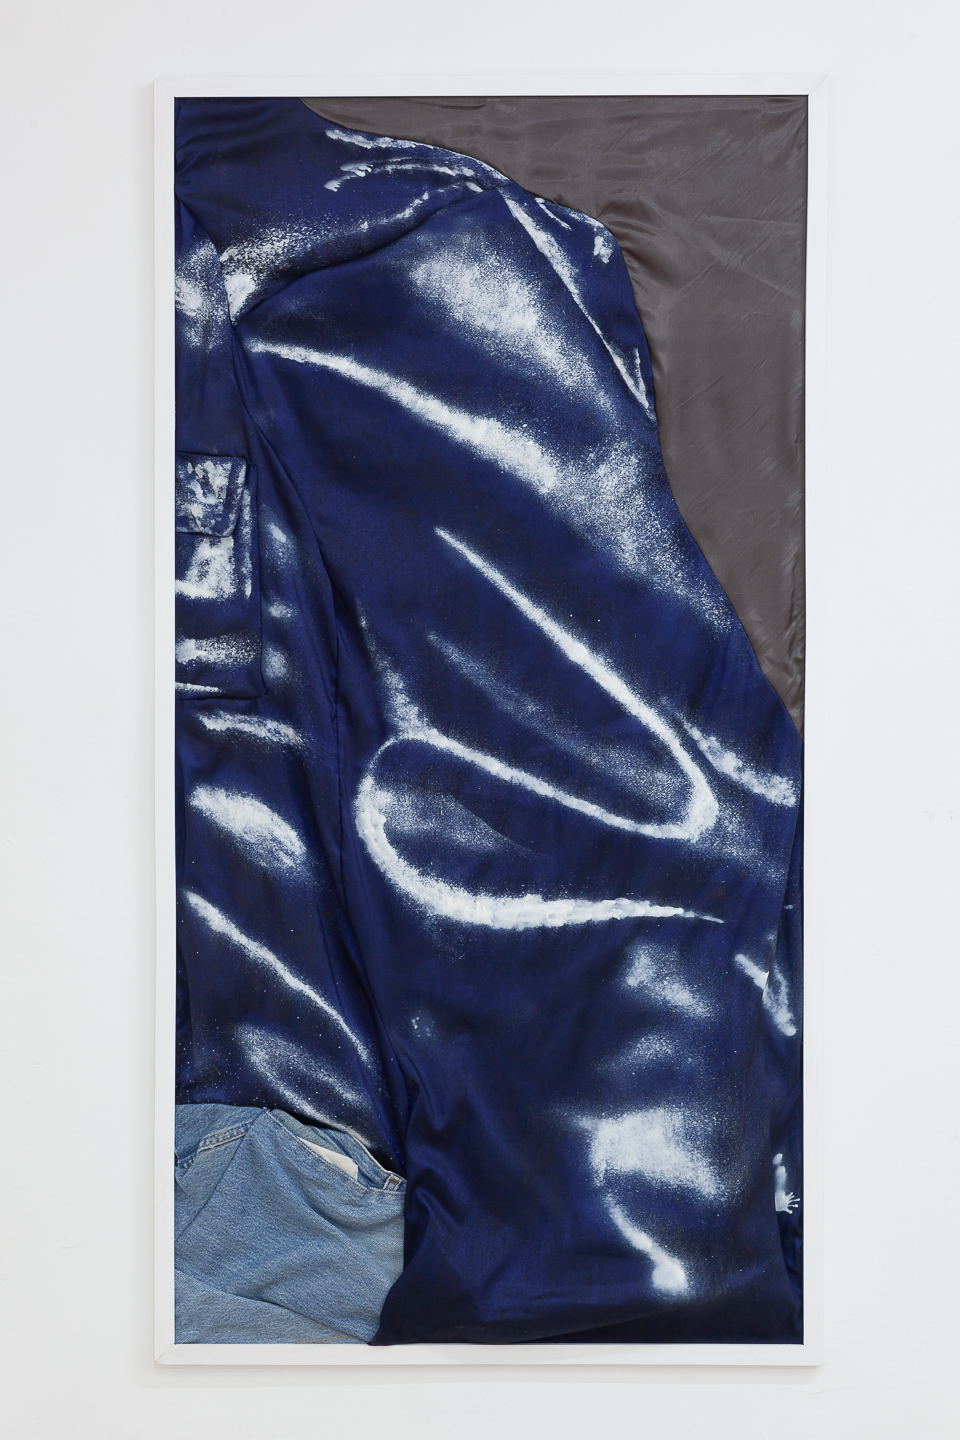 Ellie de Verdier, Leather Jacket, 2020, bleach on textile, 120x60cm